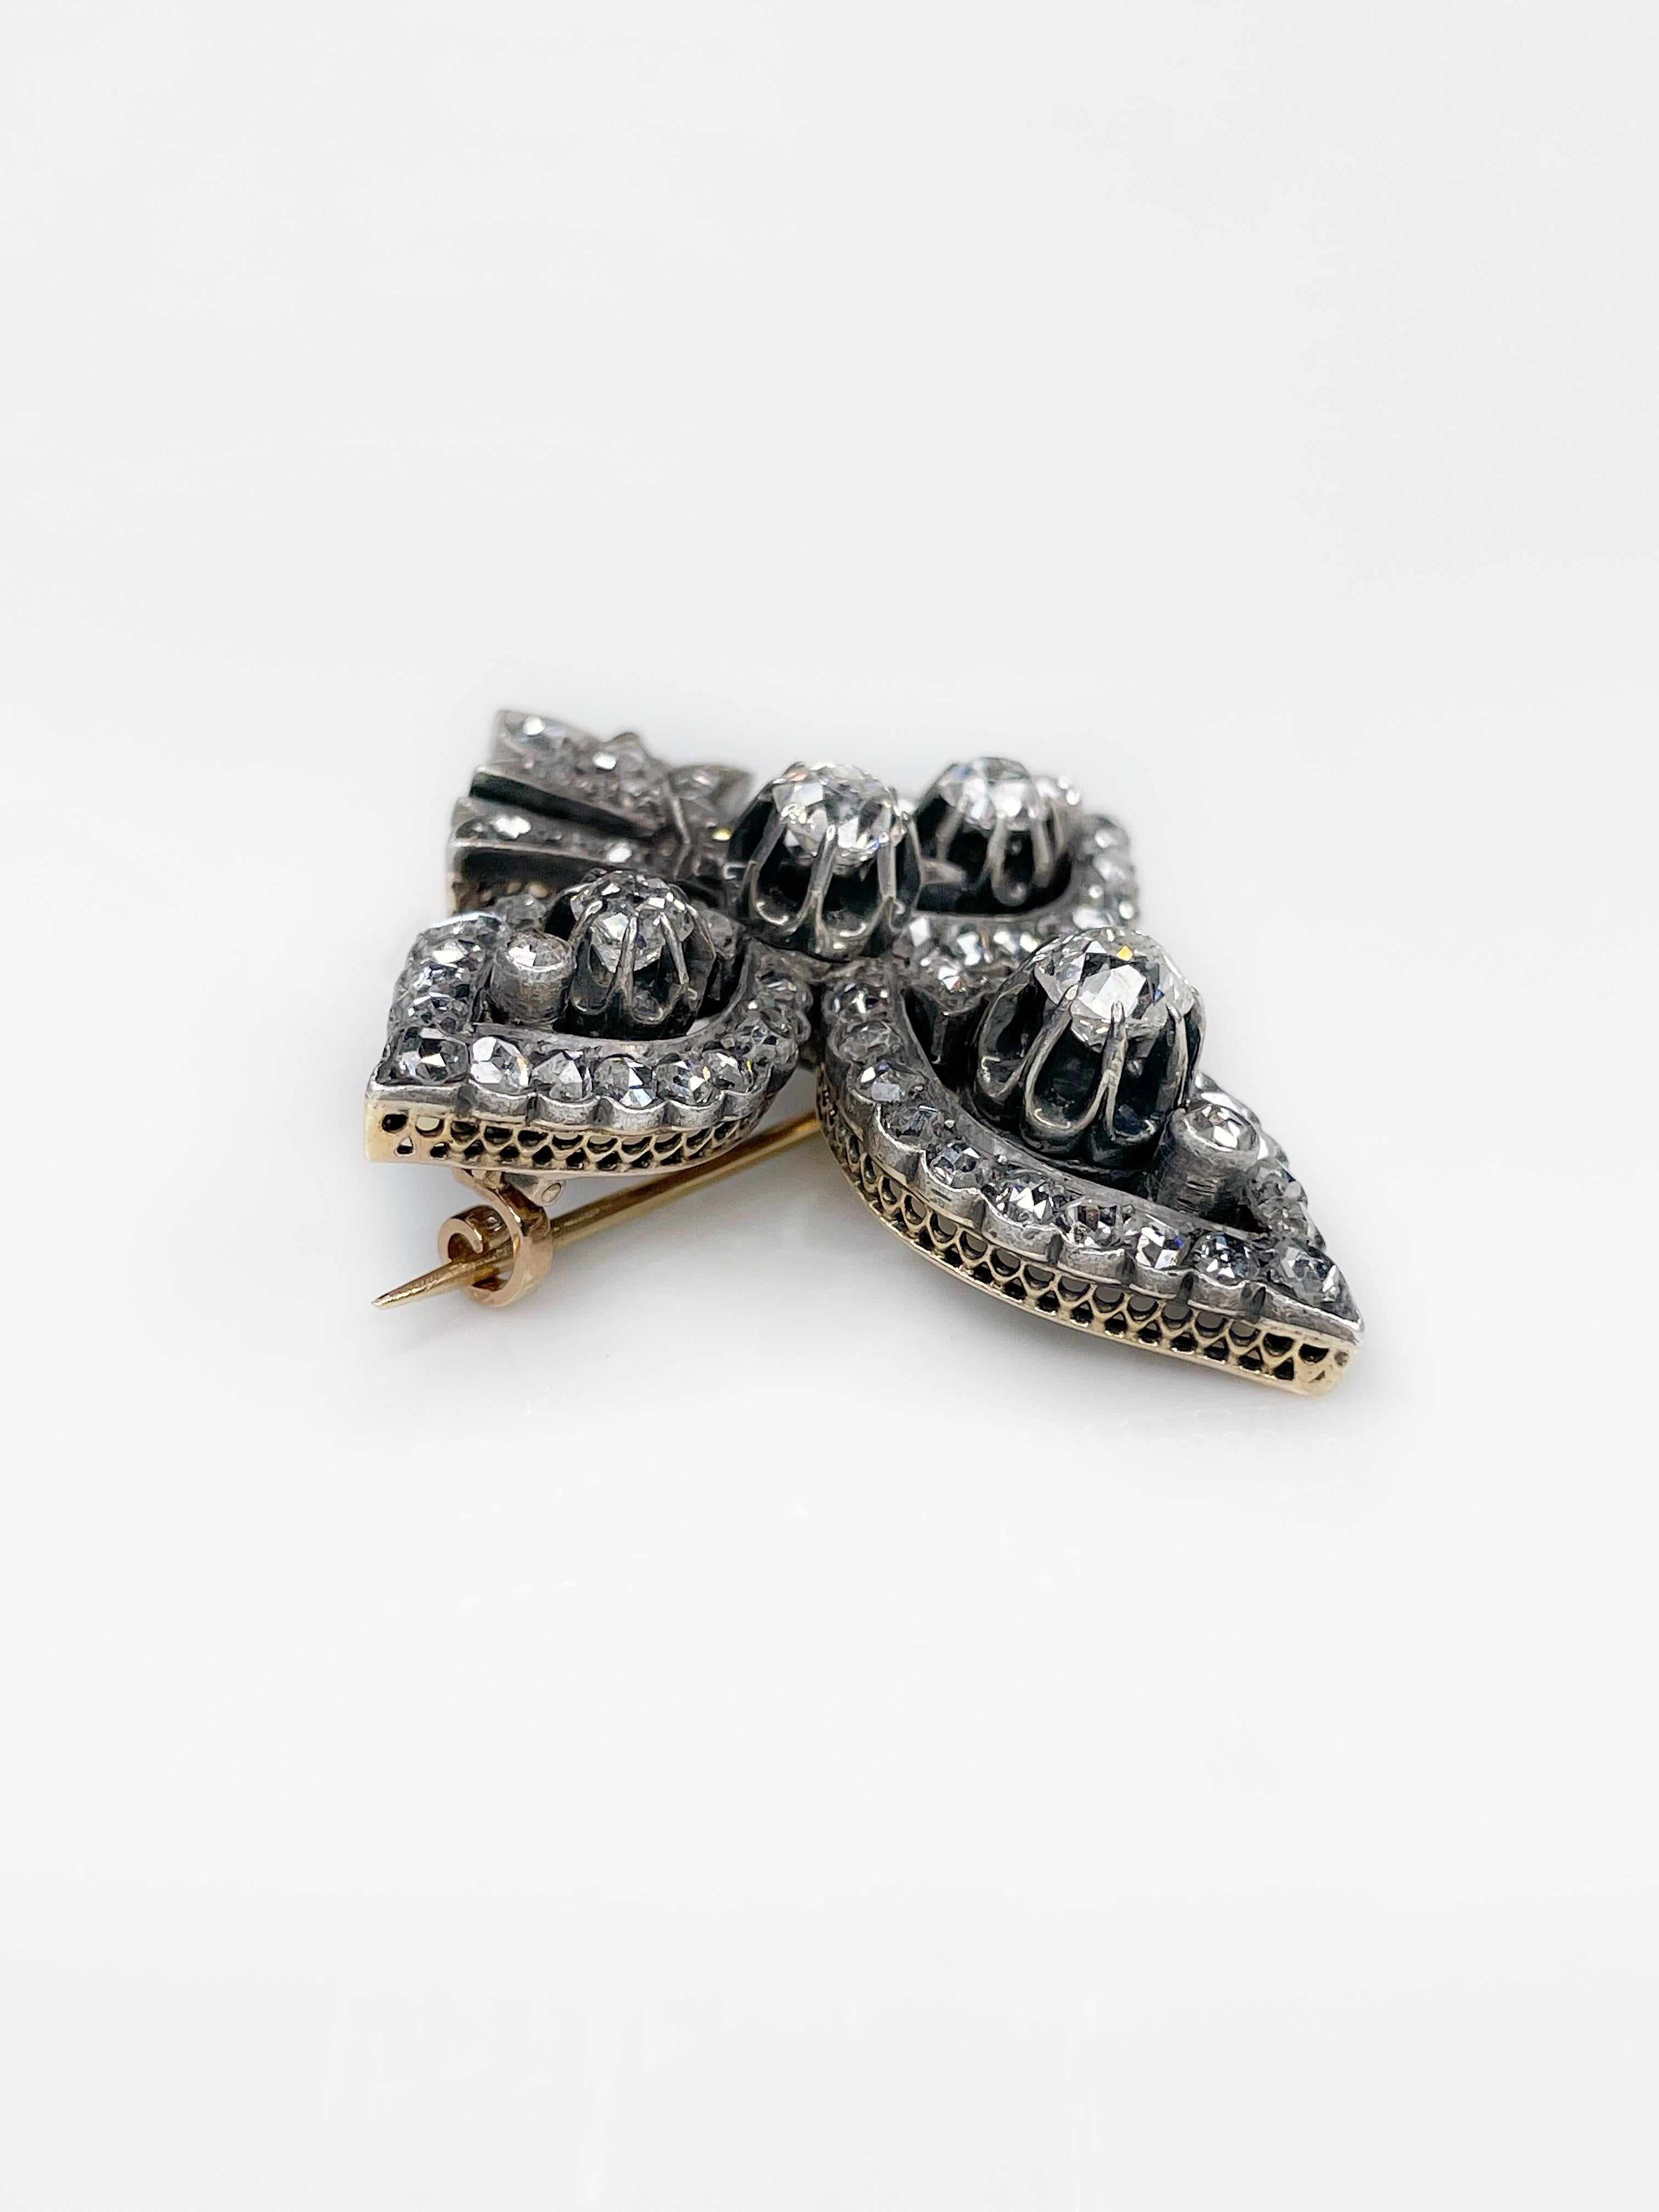 Antique 14K Gold “Fleur-de-lis” Diamond Brooch Pendant XIX Century 4